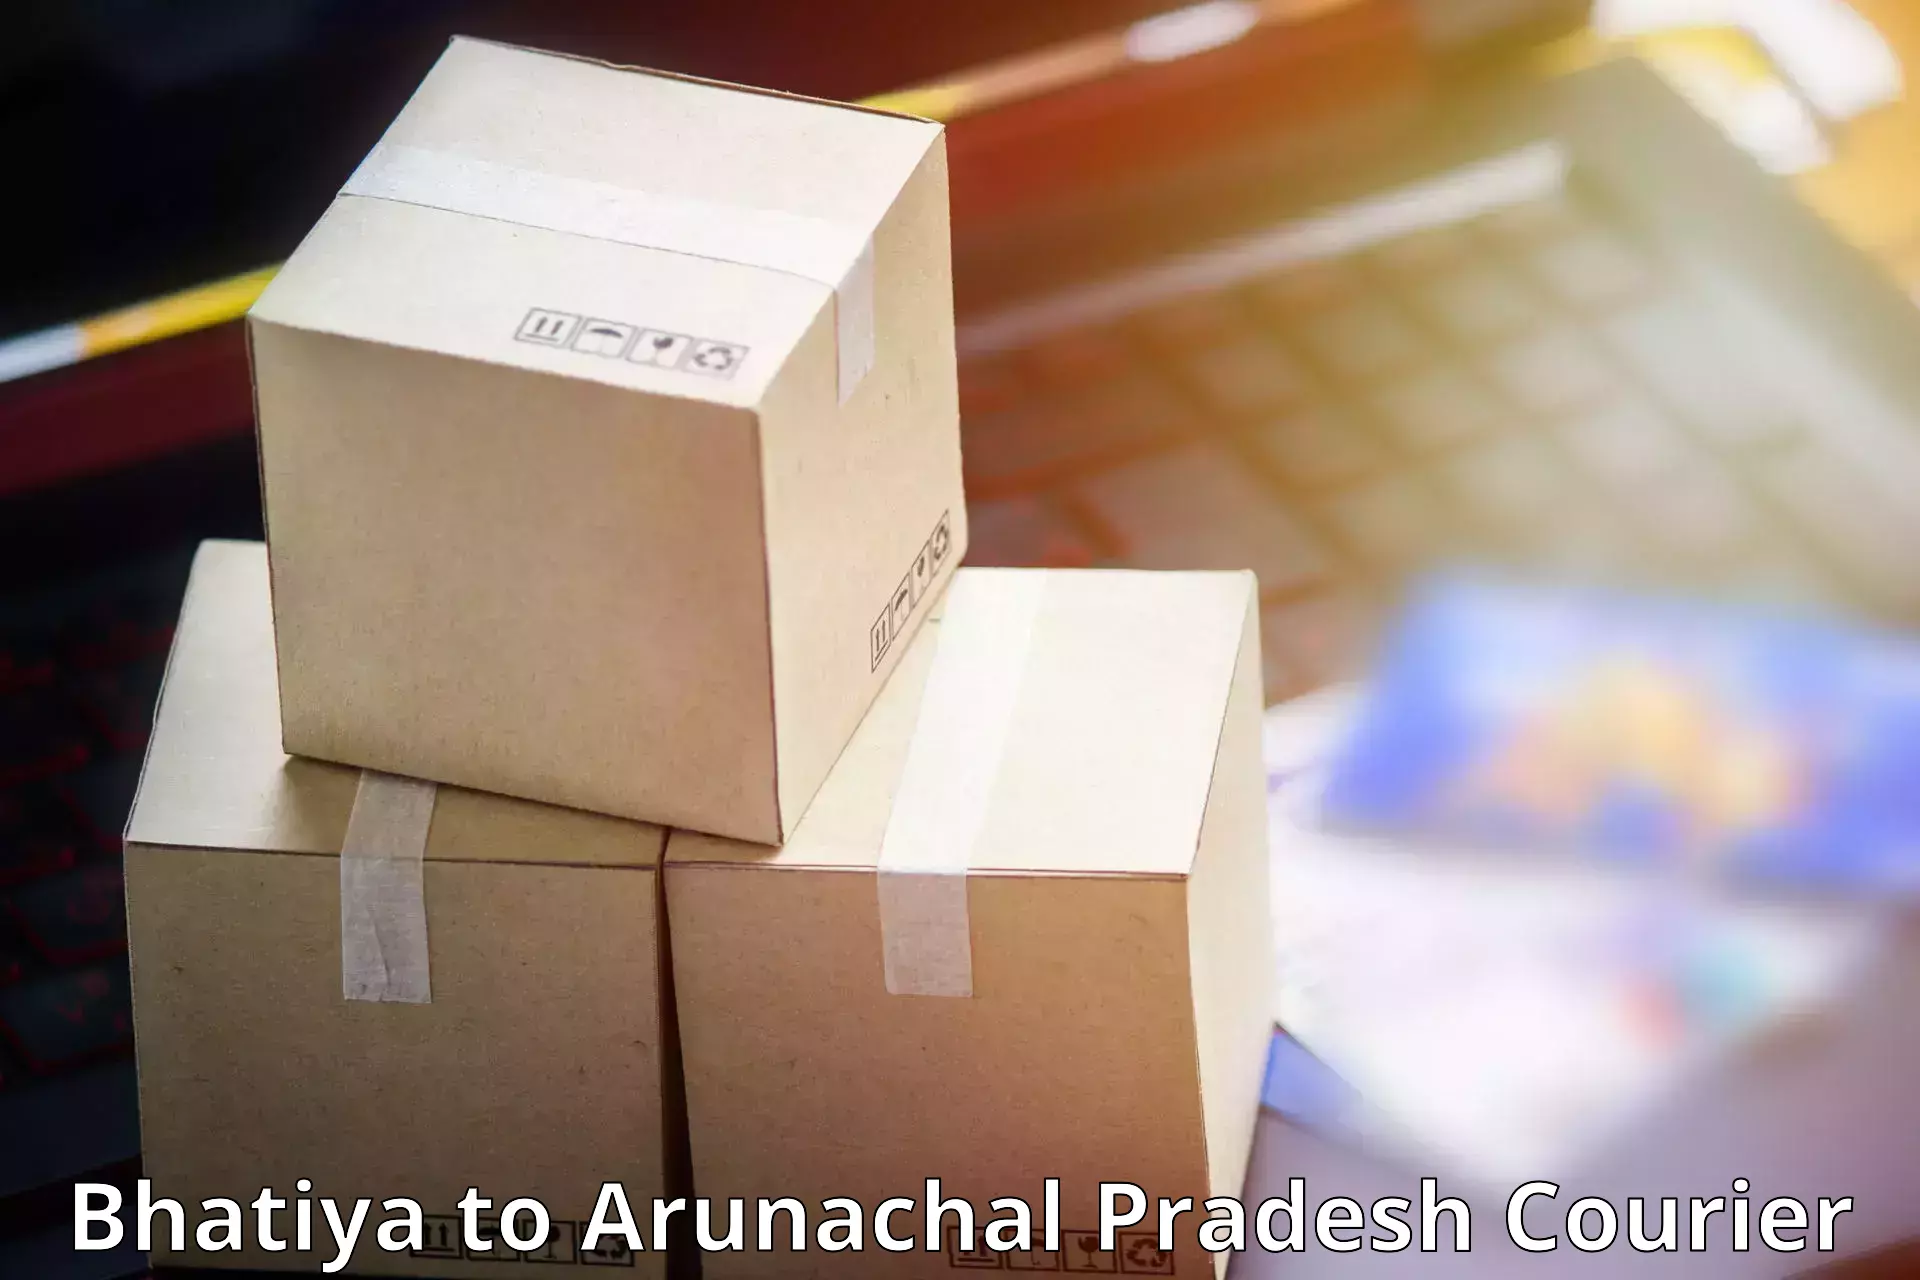 Package forwarding in Bhatiya to Arunachal Pradesh